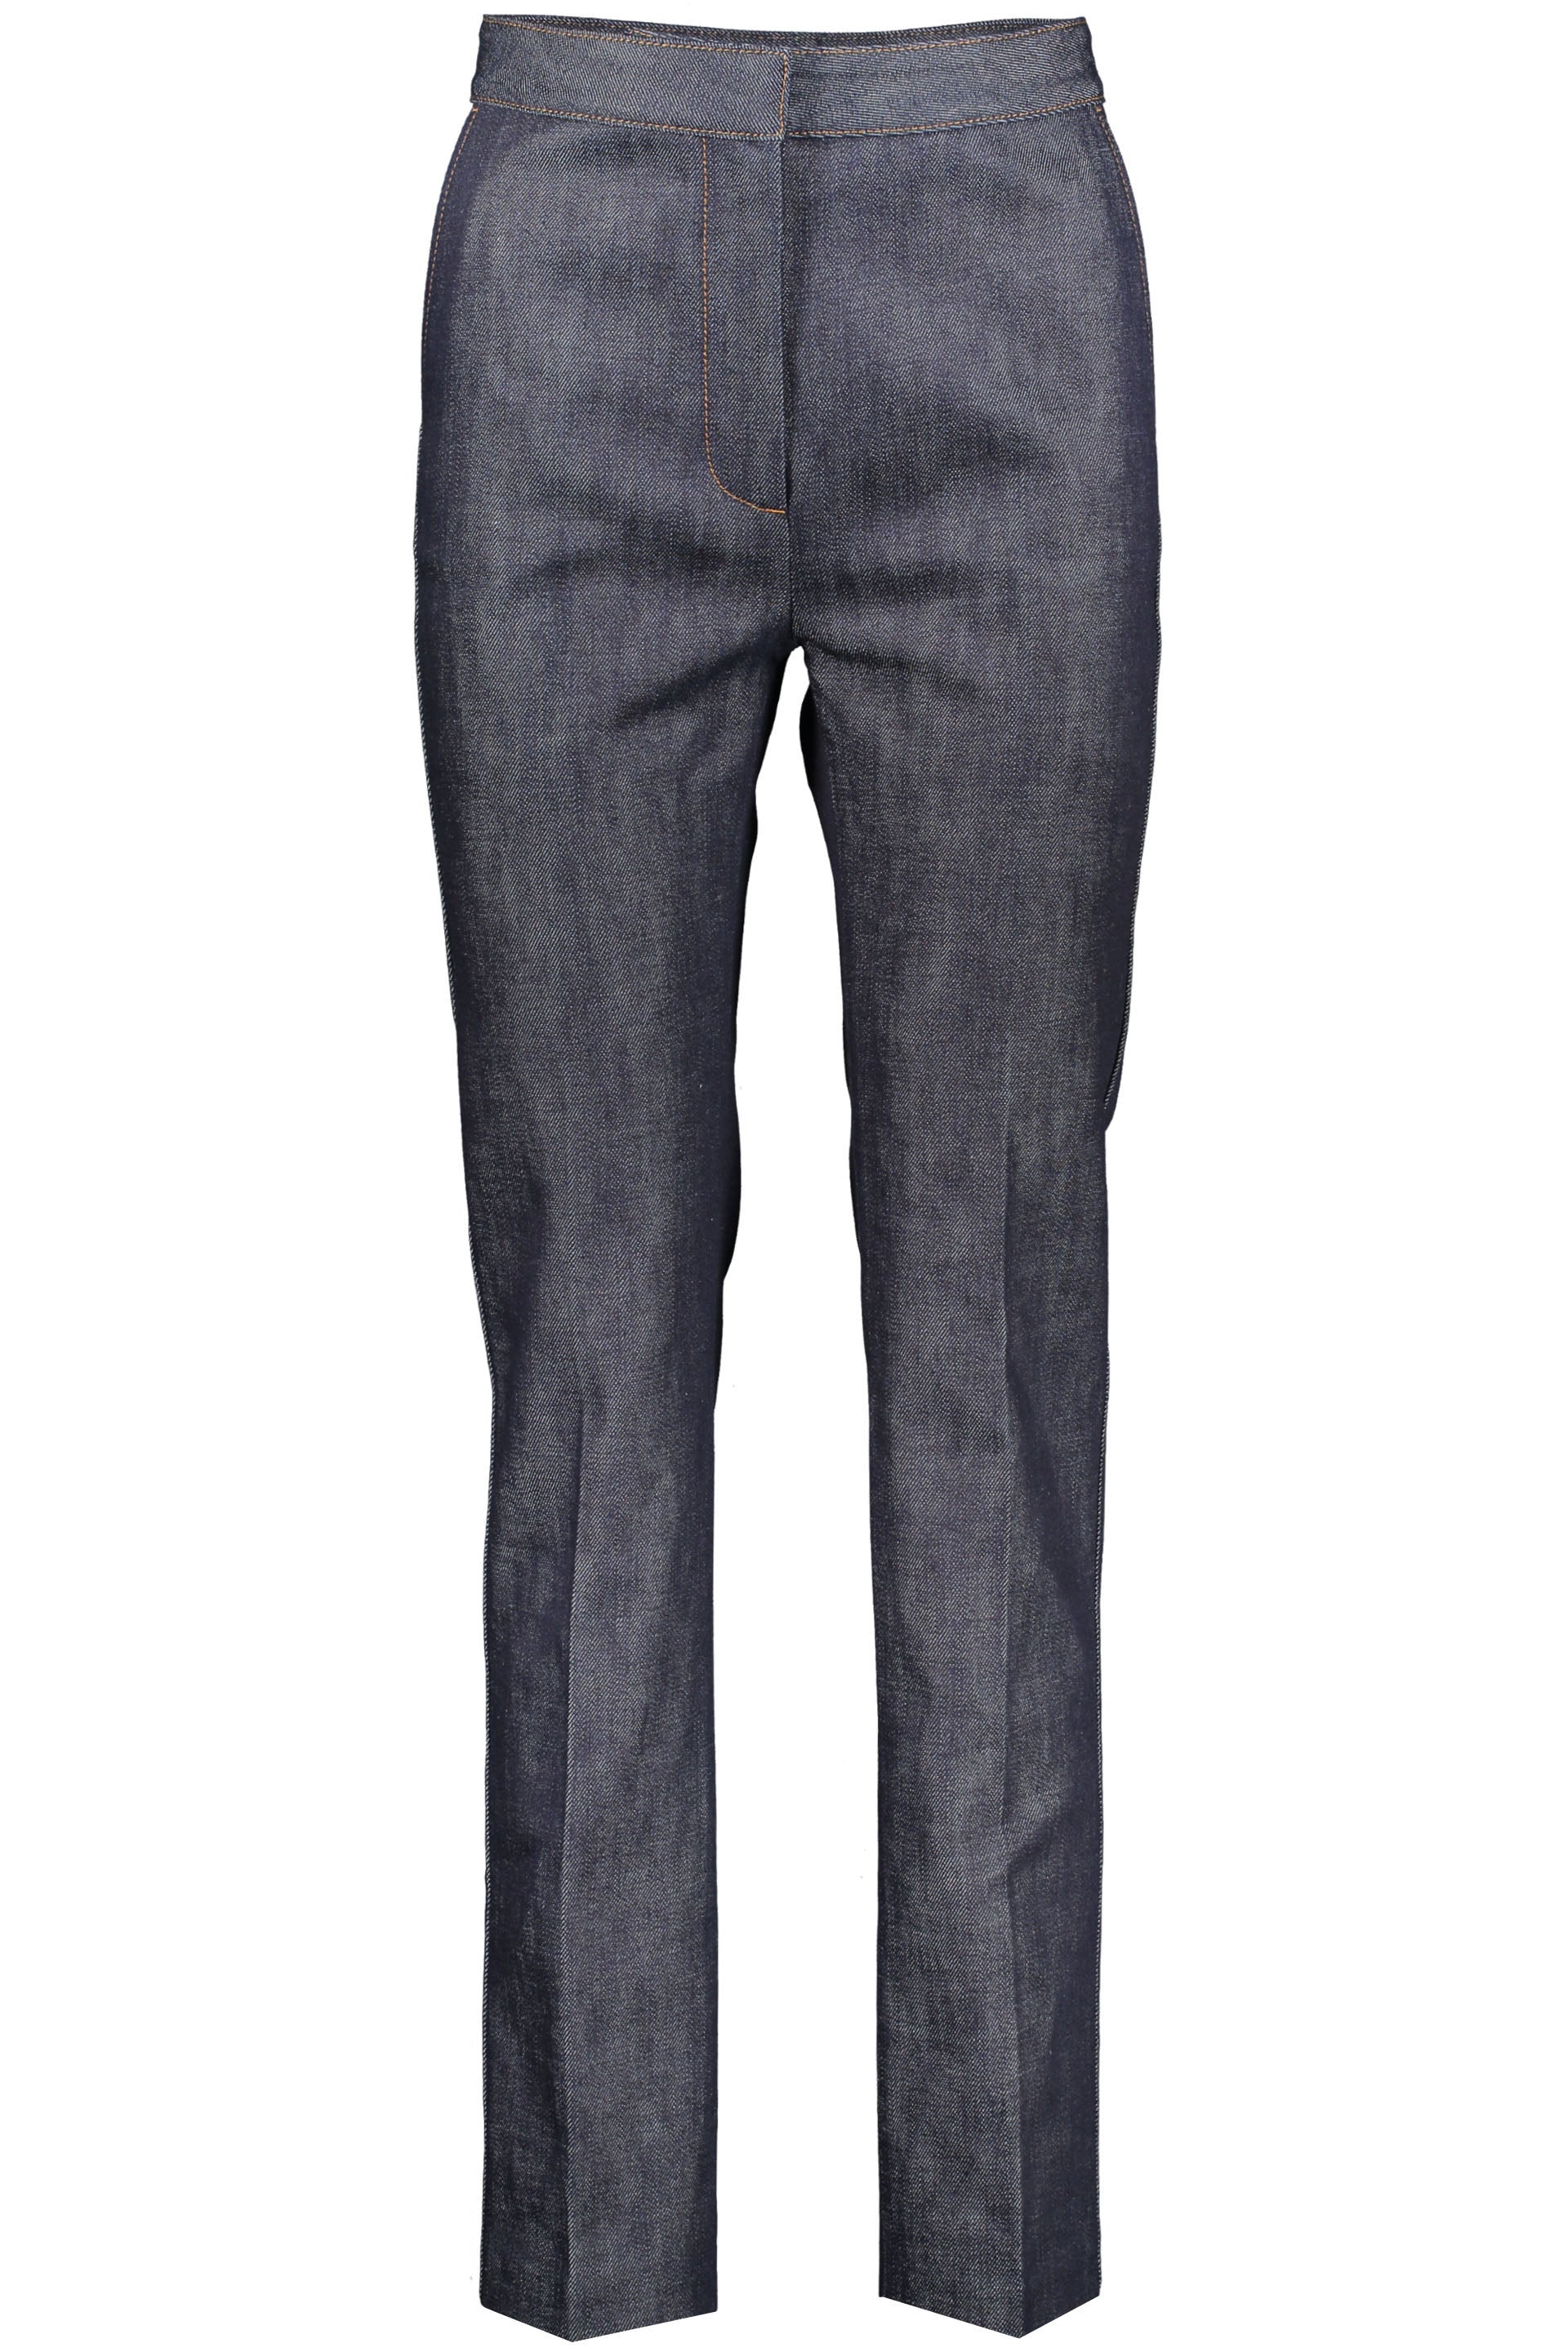 Straight leg jeans-Burberry-OUTLET-SALE-26-ARCHIVIST